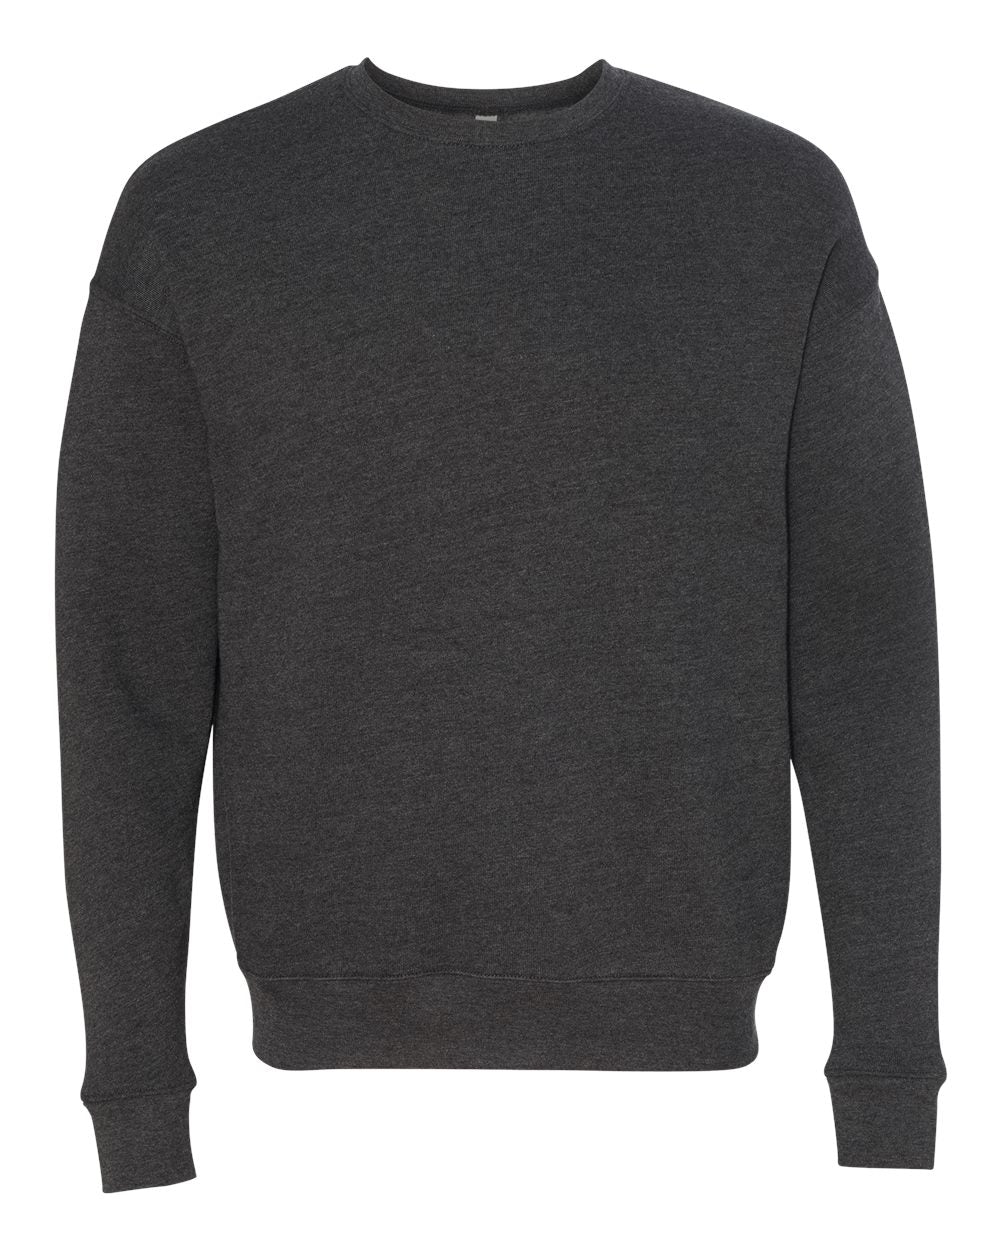 bella+canvas fleece crewneck sweatshirt dark grey heather